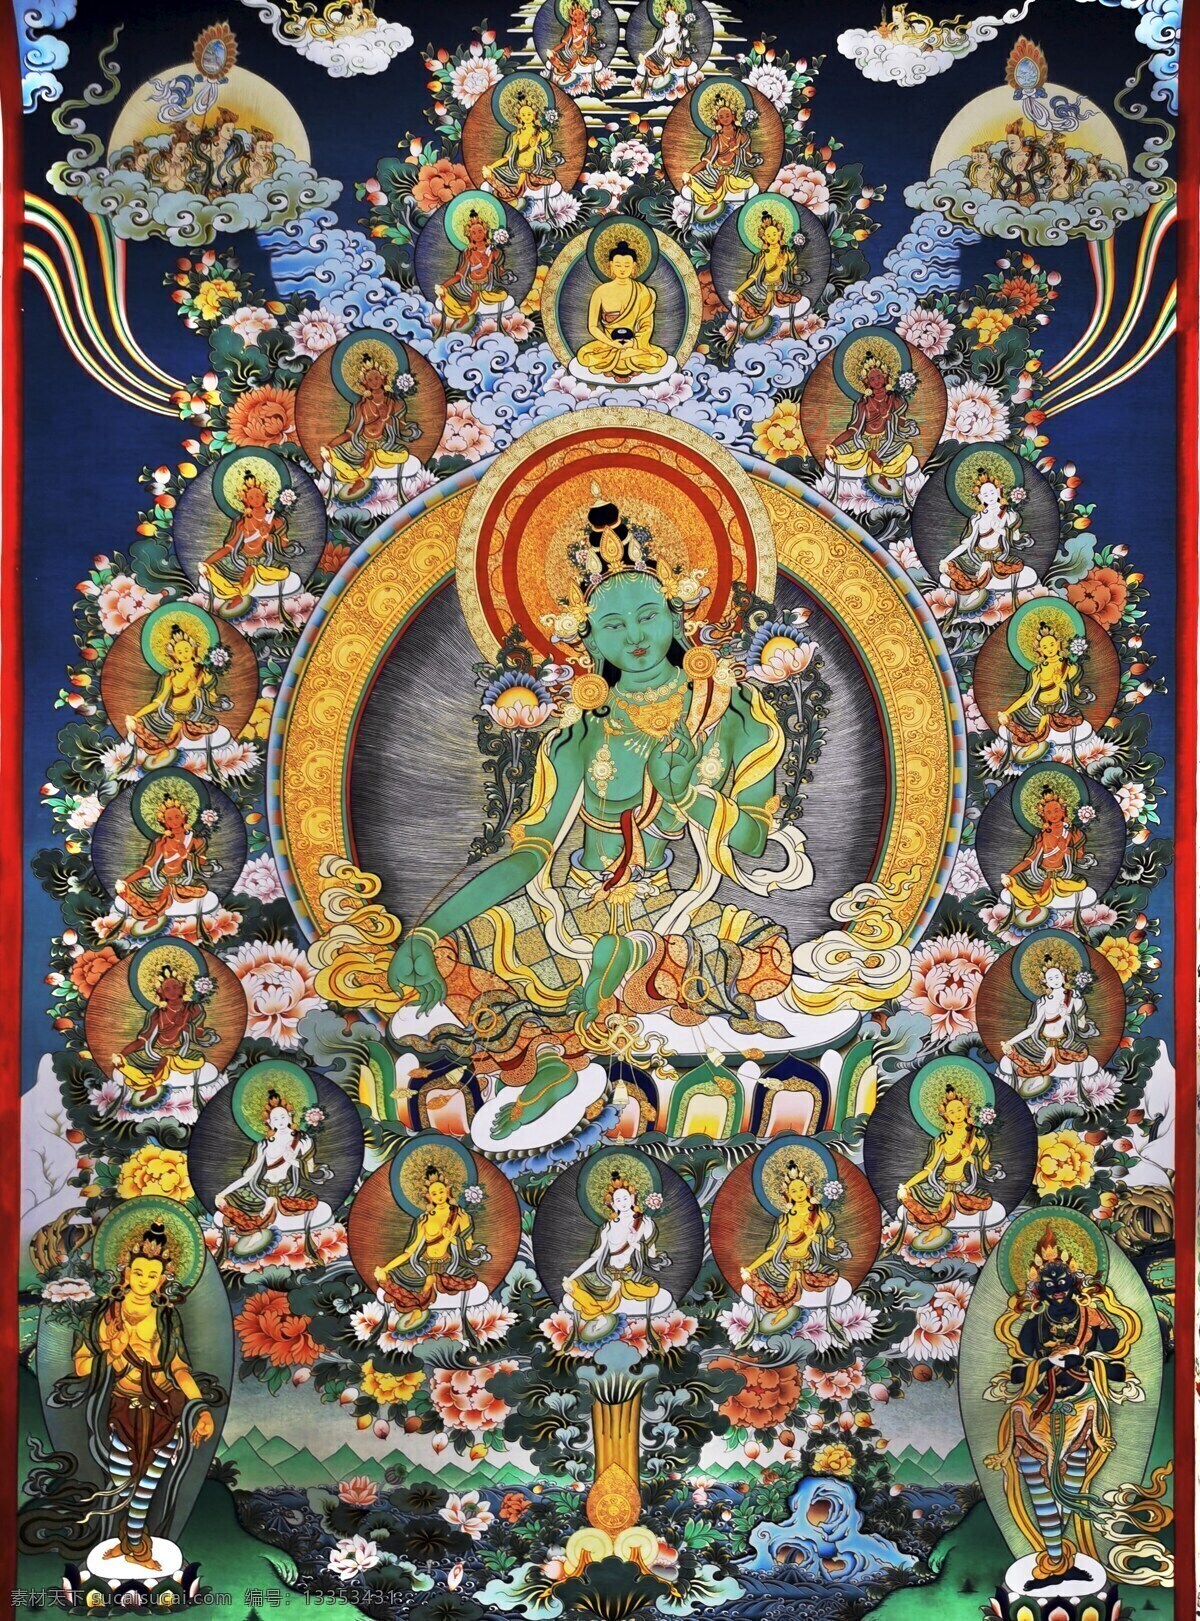 绿度母唐卡 绿度母 唐卡 热贡 藏式 21度母 藏传 佛像 文化艺术 绘画书法